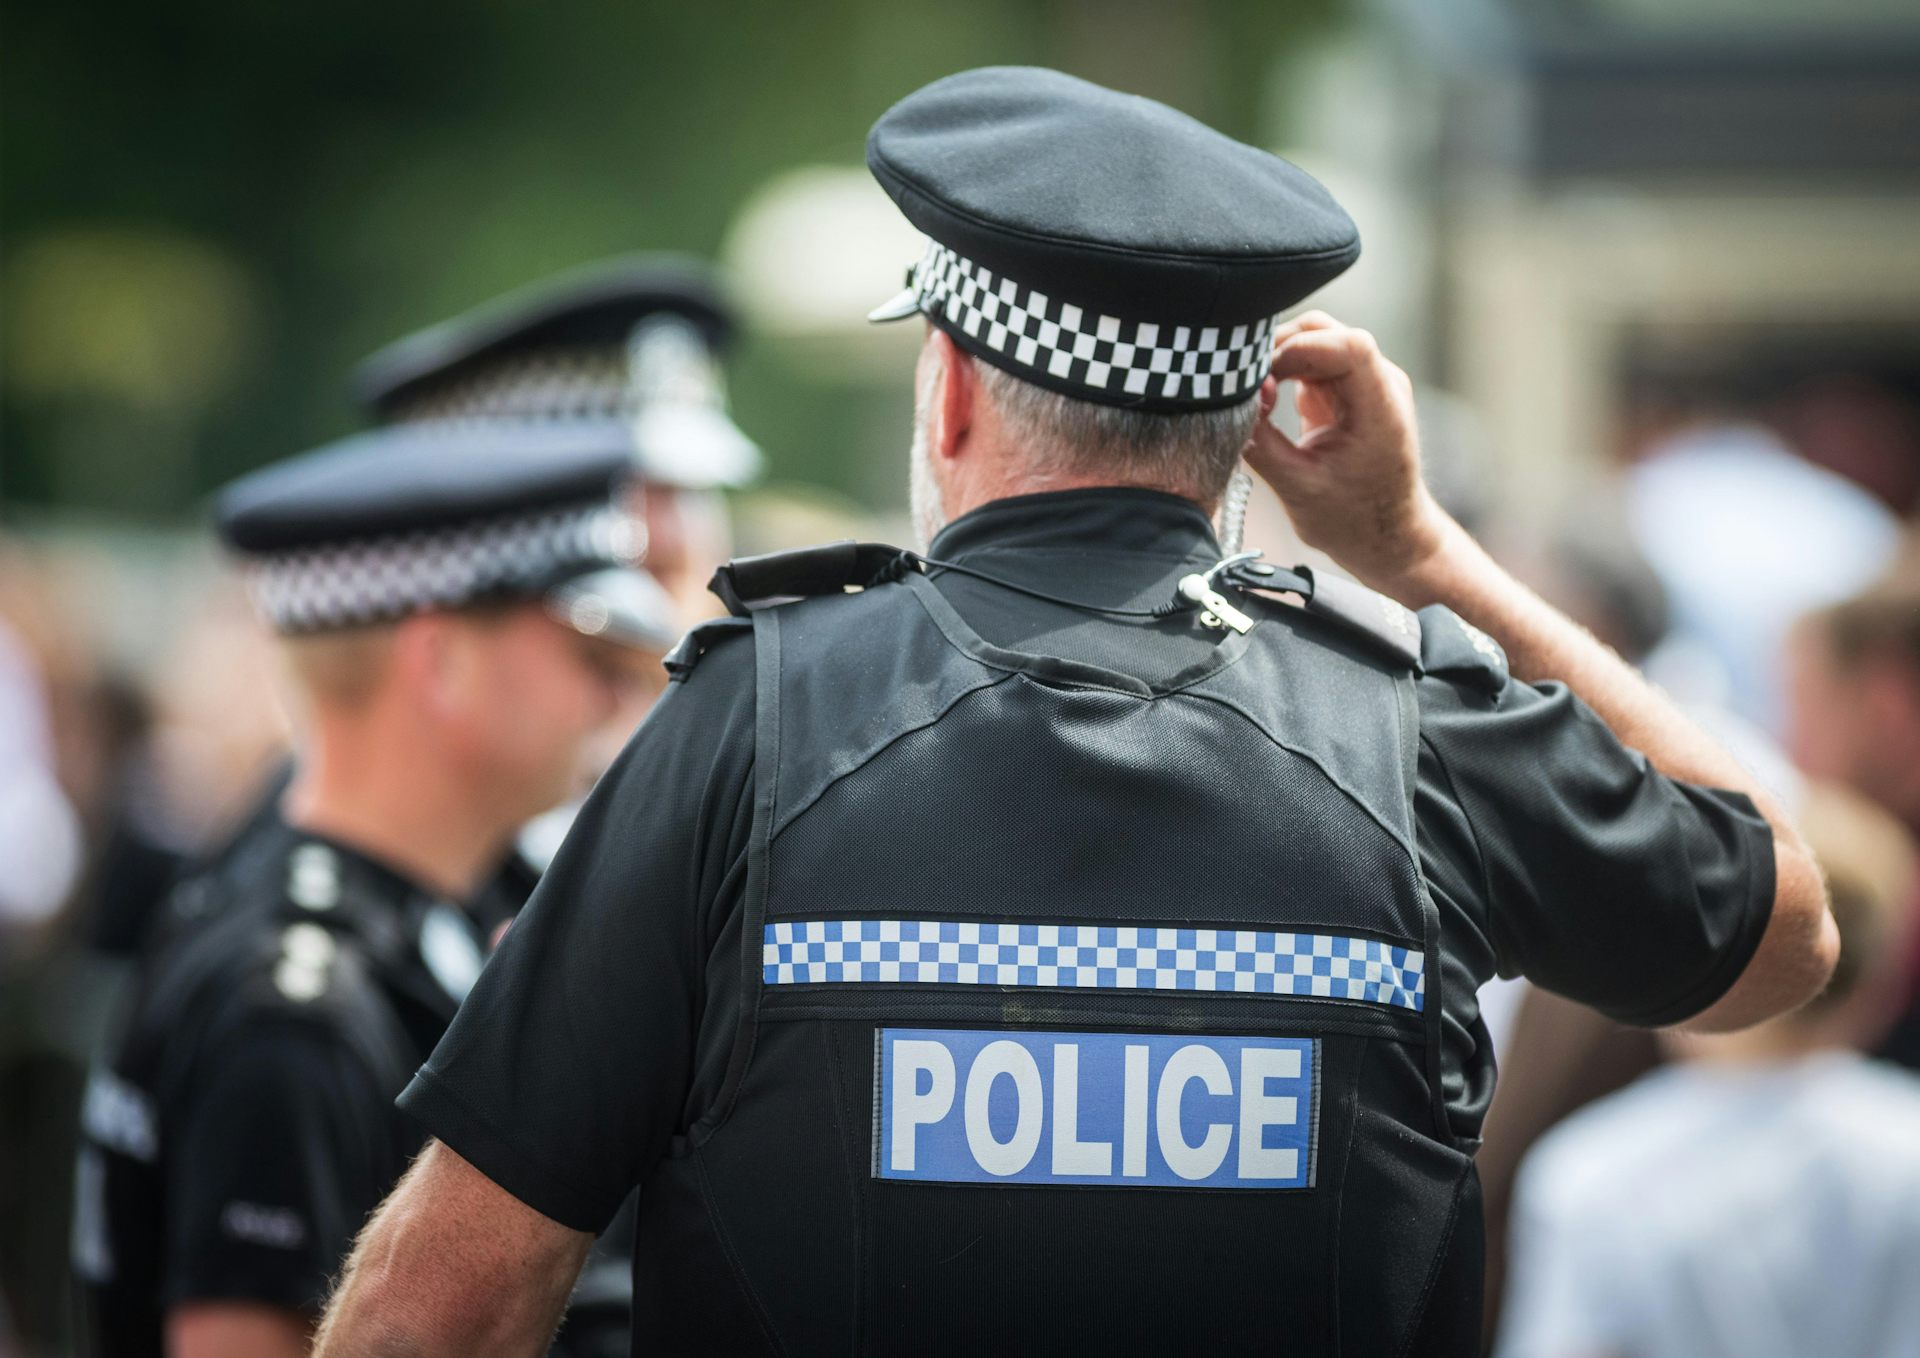 Genuine Ex Police Clip On Tie Black Uniform Security Special Occasion Formal 